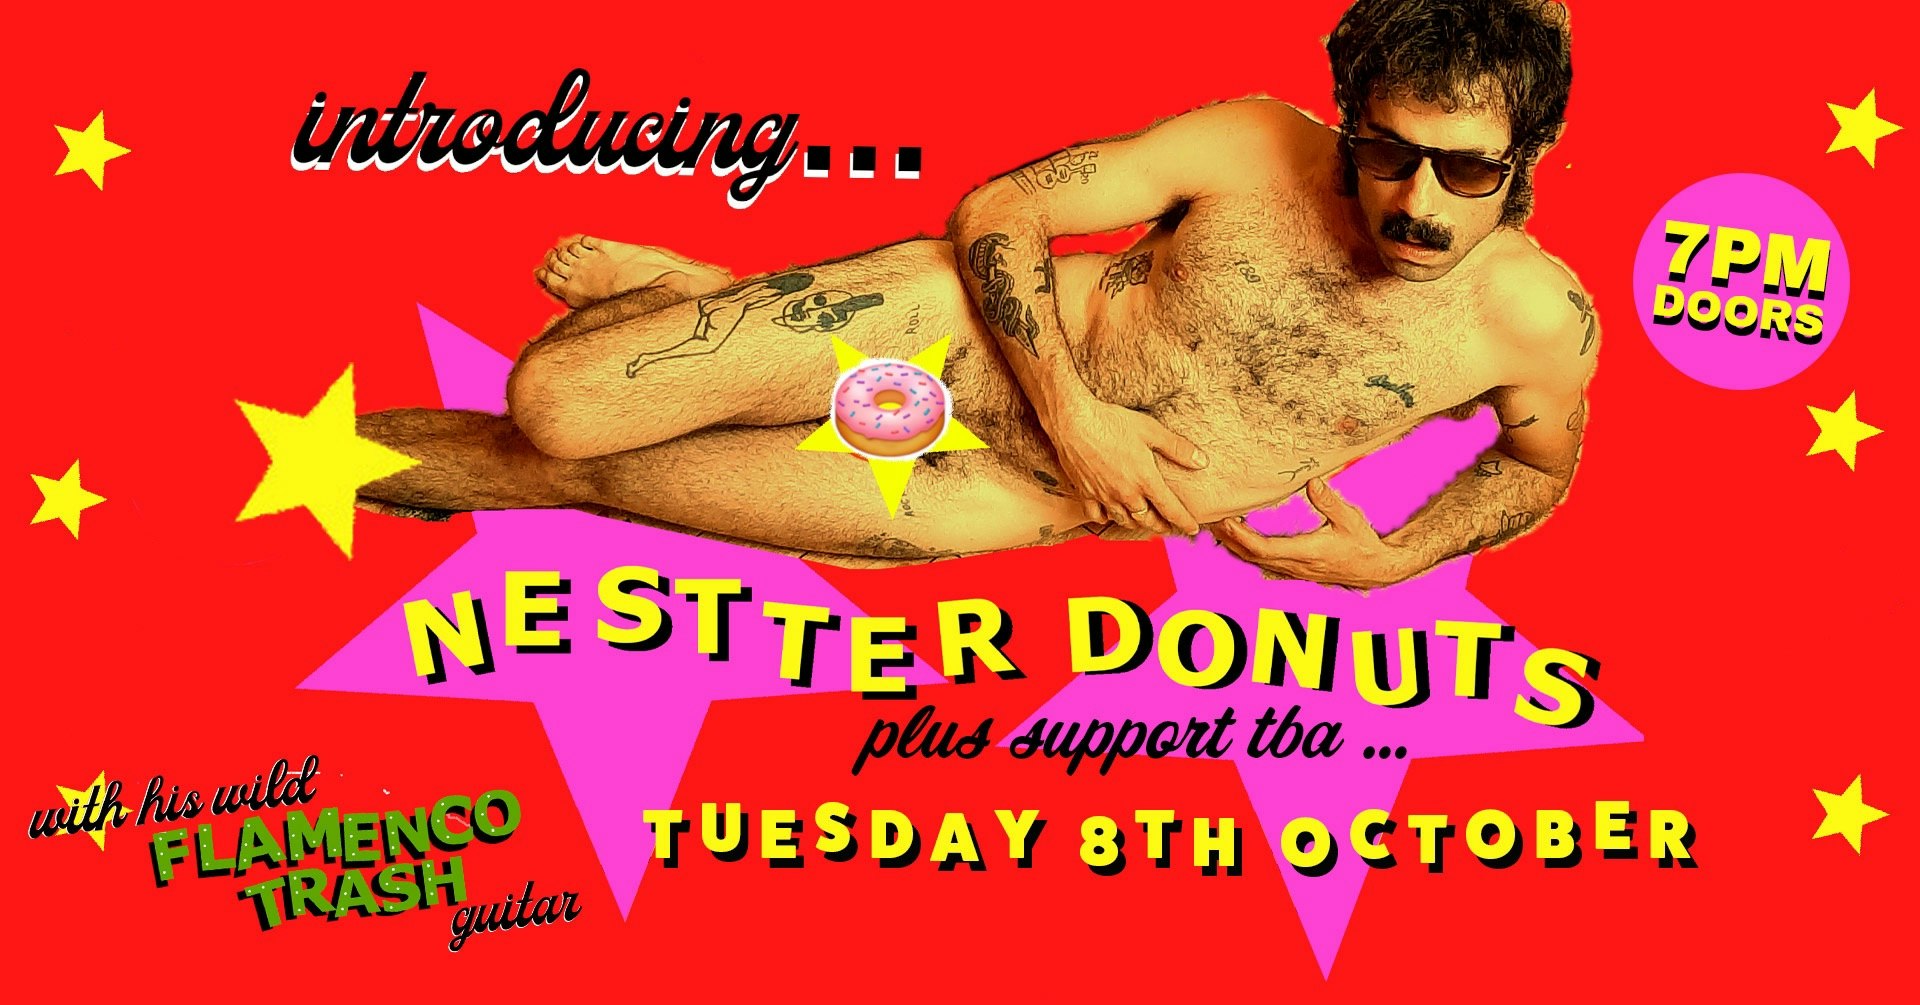 Nestter Donuts